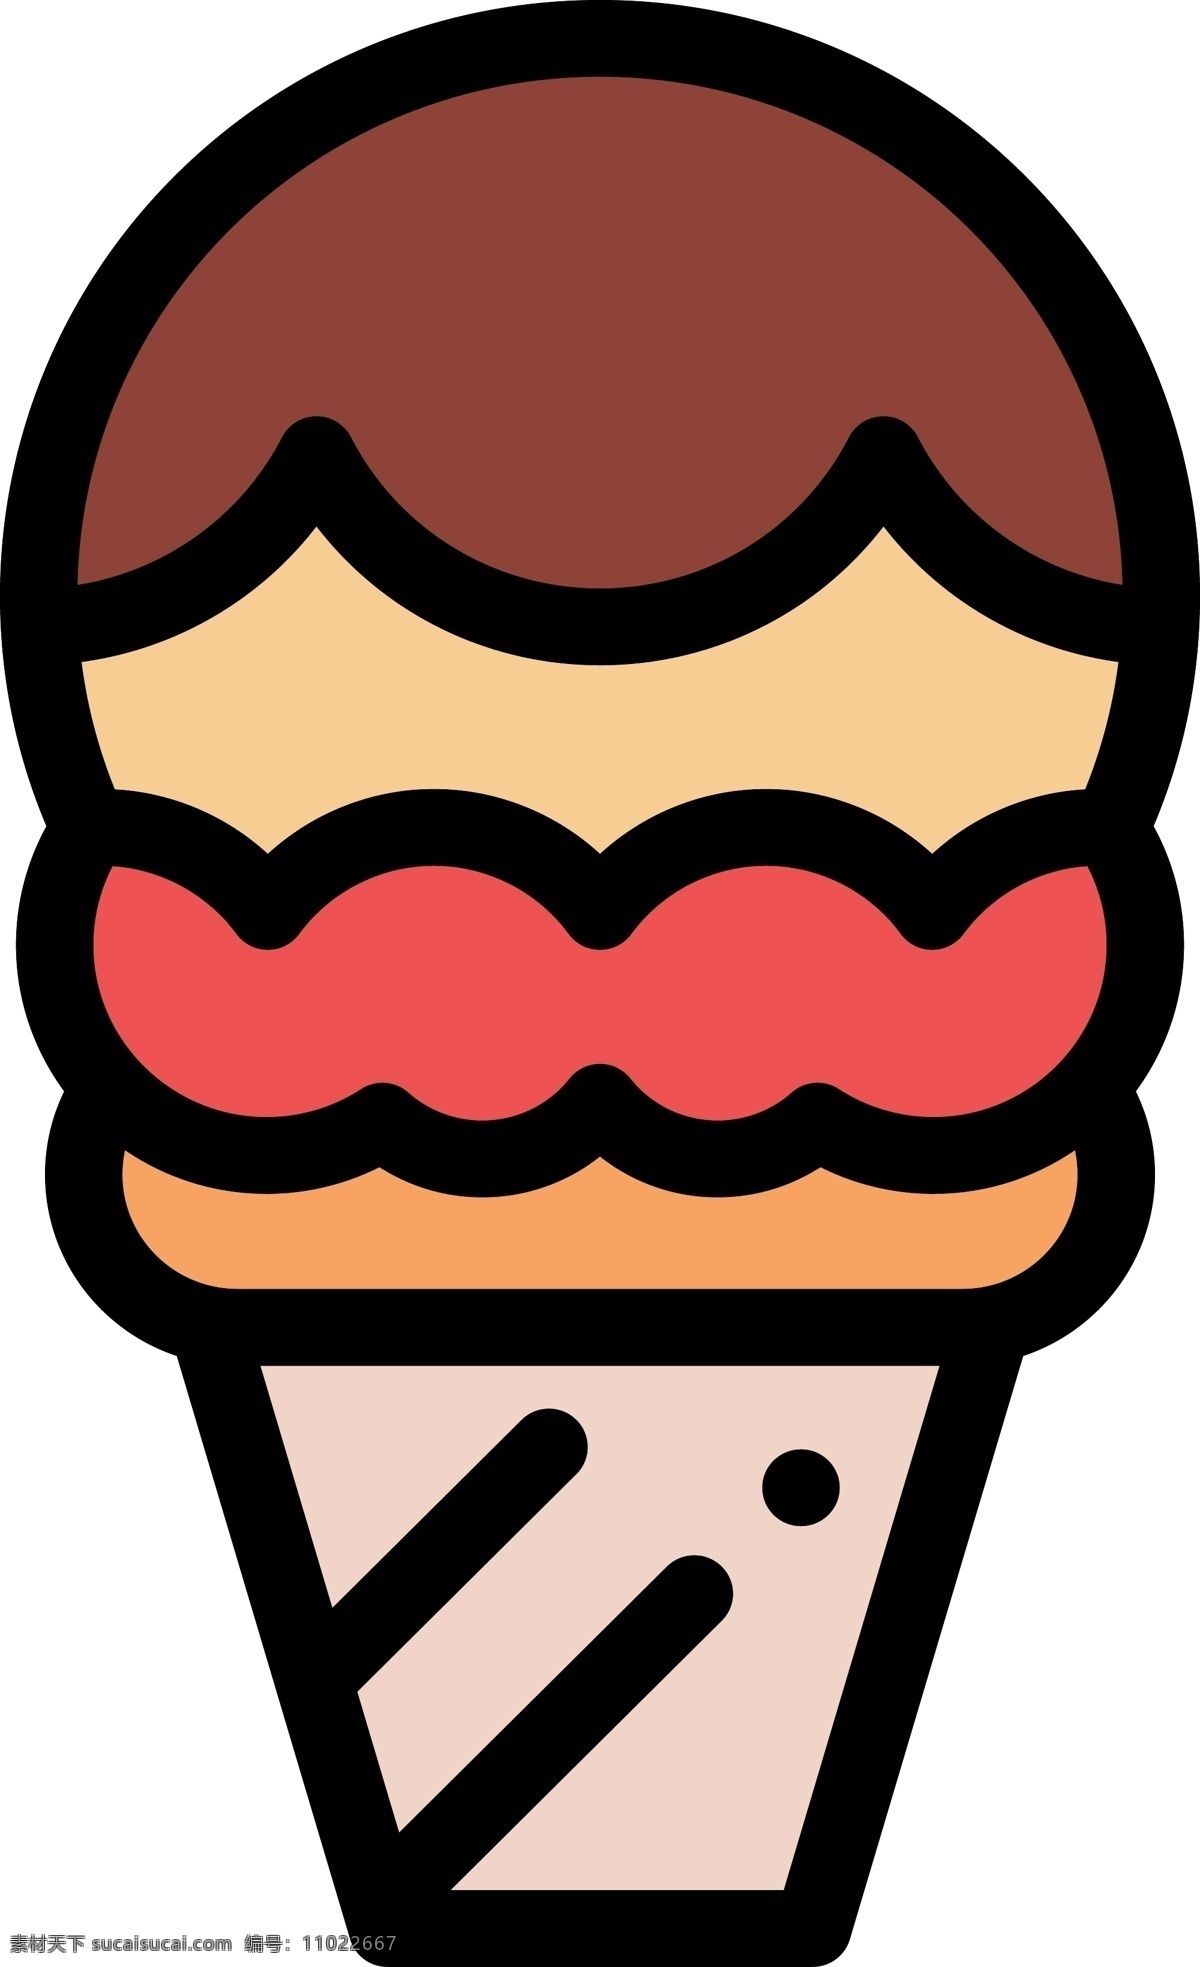 雪糕 卡通 免 扣 甜食 甜品 食物 食品 美味的 可爱的 图标 扁平化 矢量图 圆筒 甜筒 巧克力雪糕